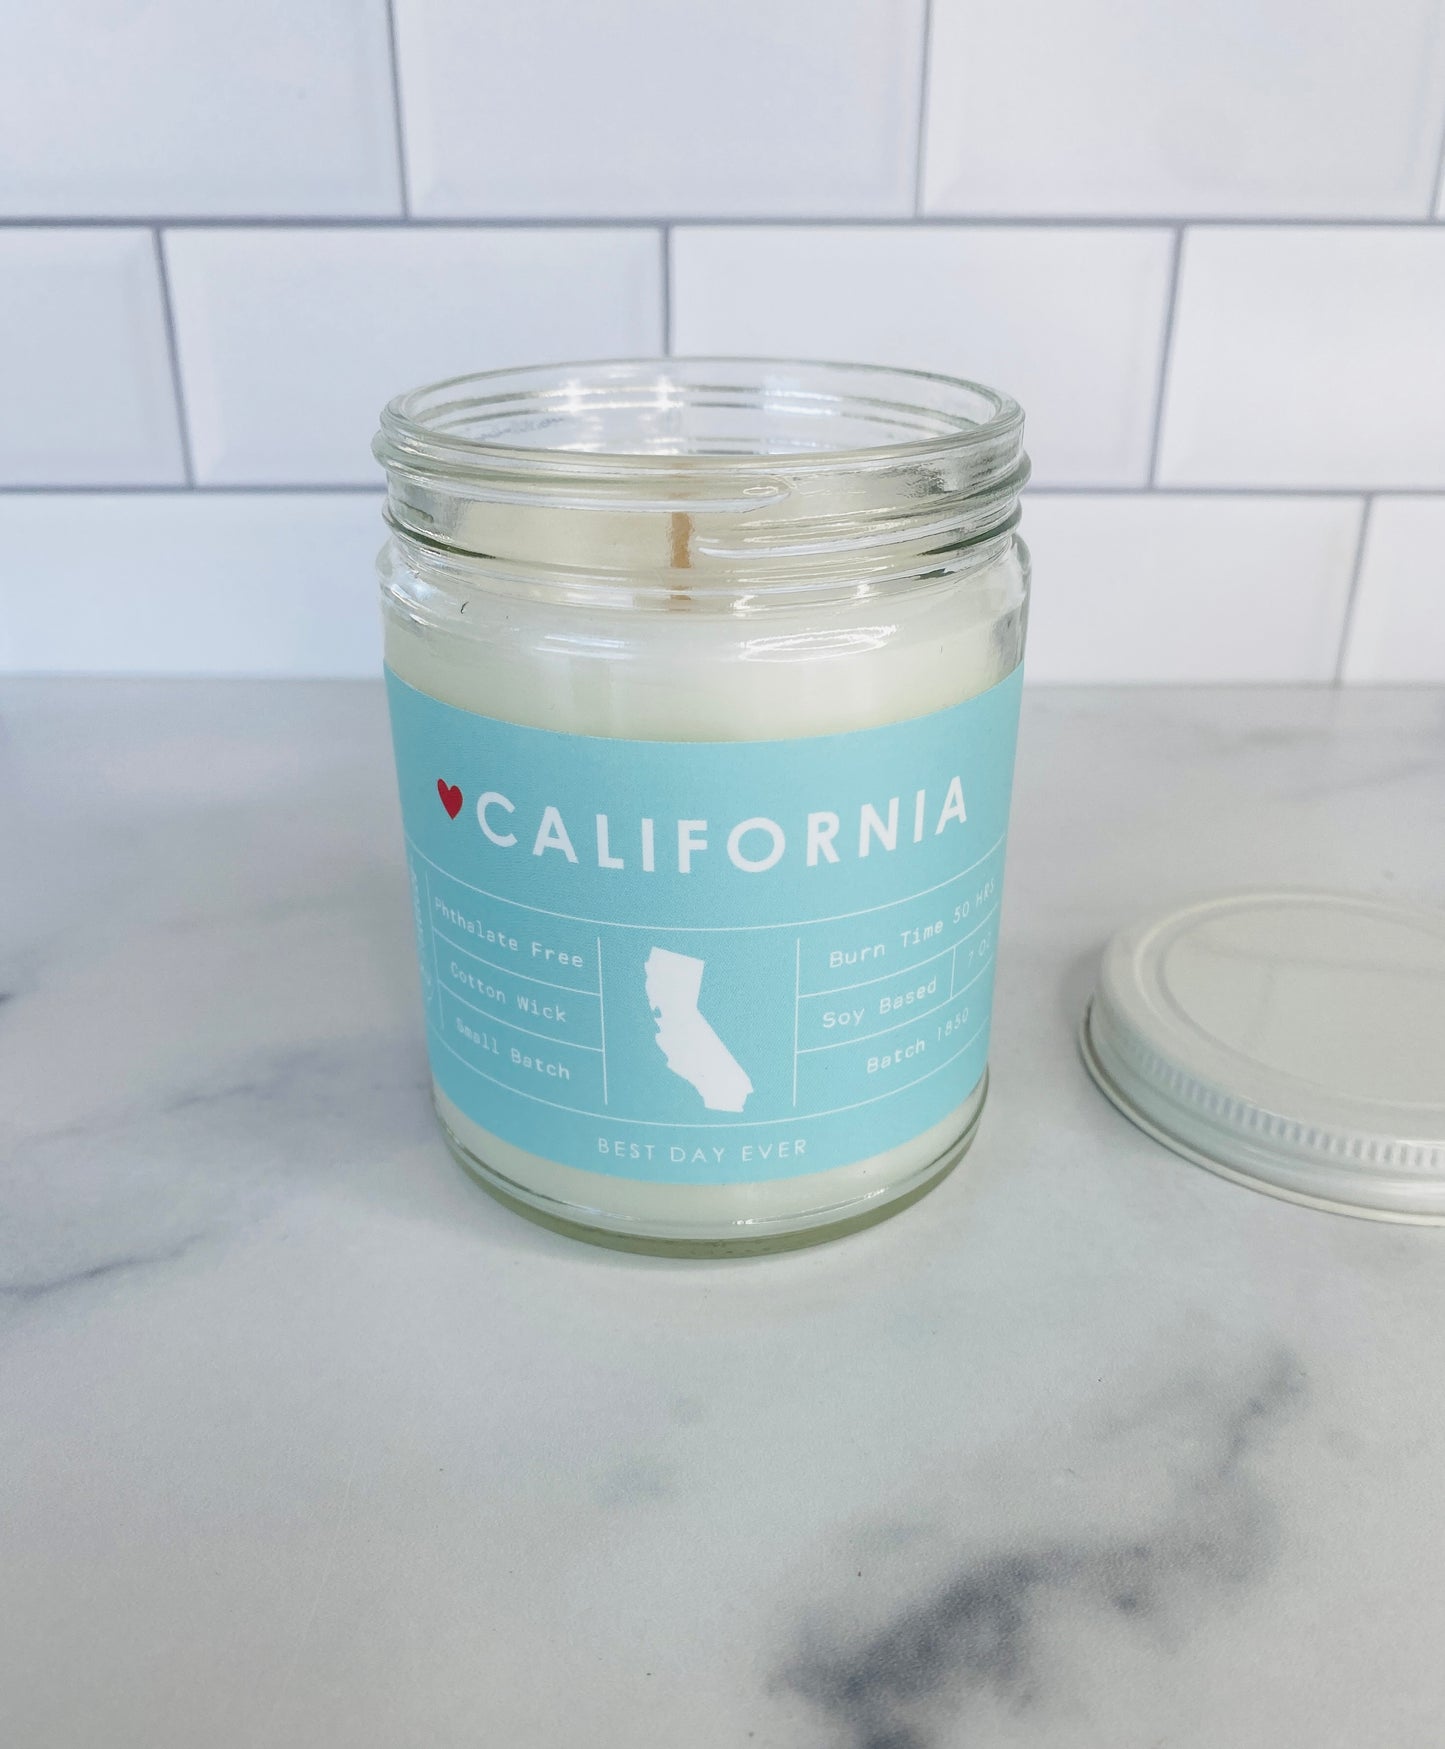 California Candle